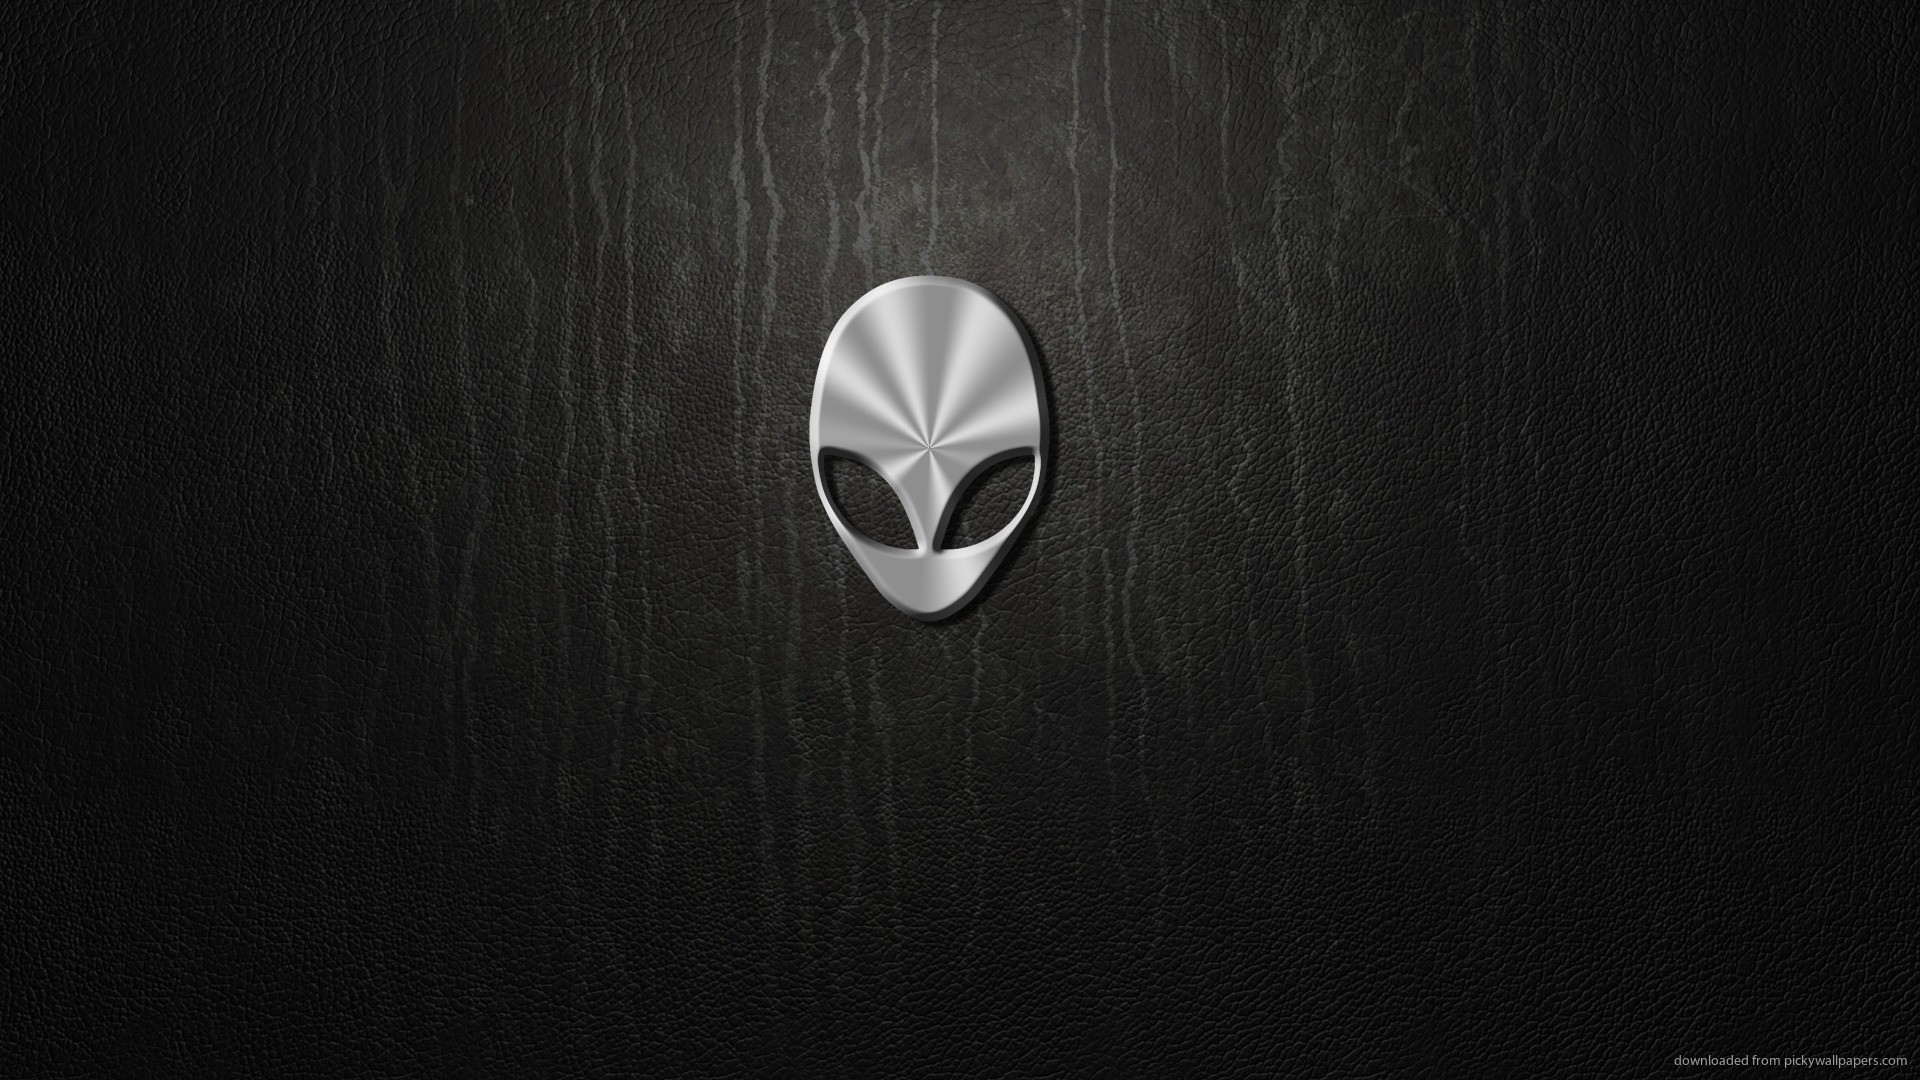 1920x1080 Alienware Logo Desktop Wallpaper picture